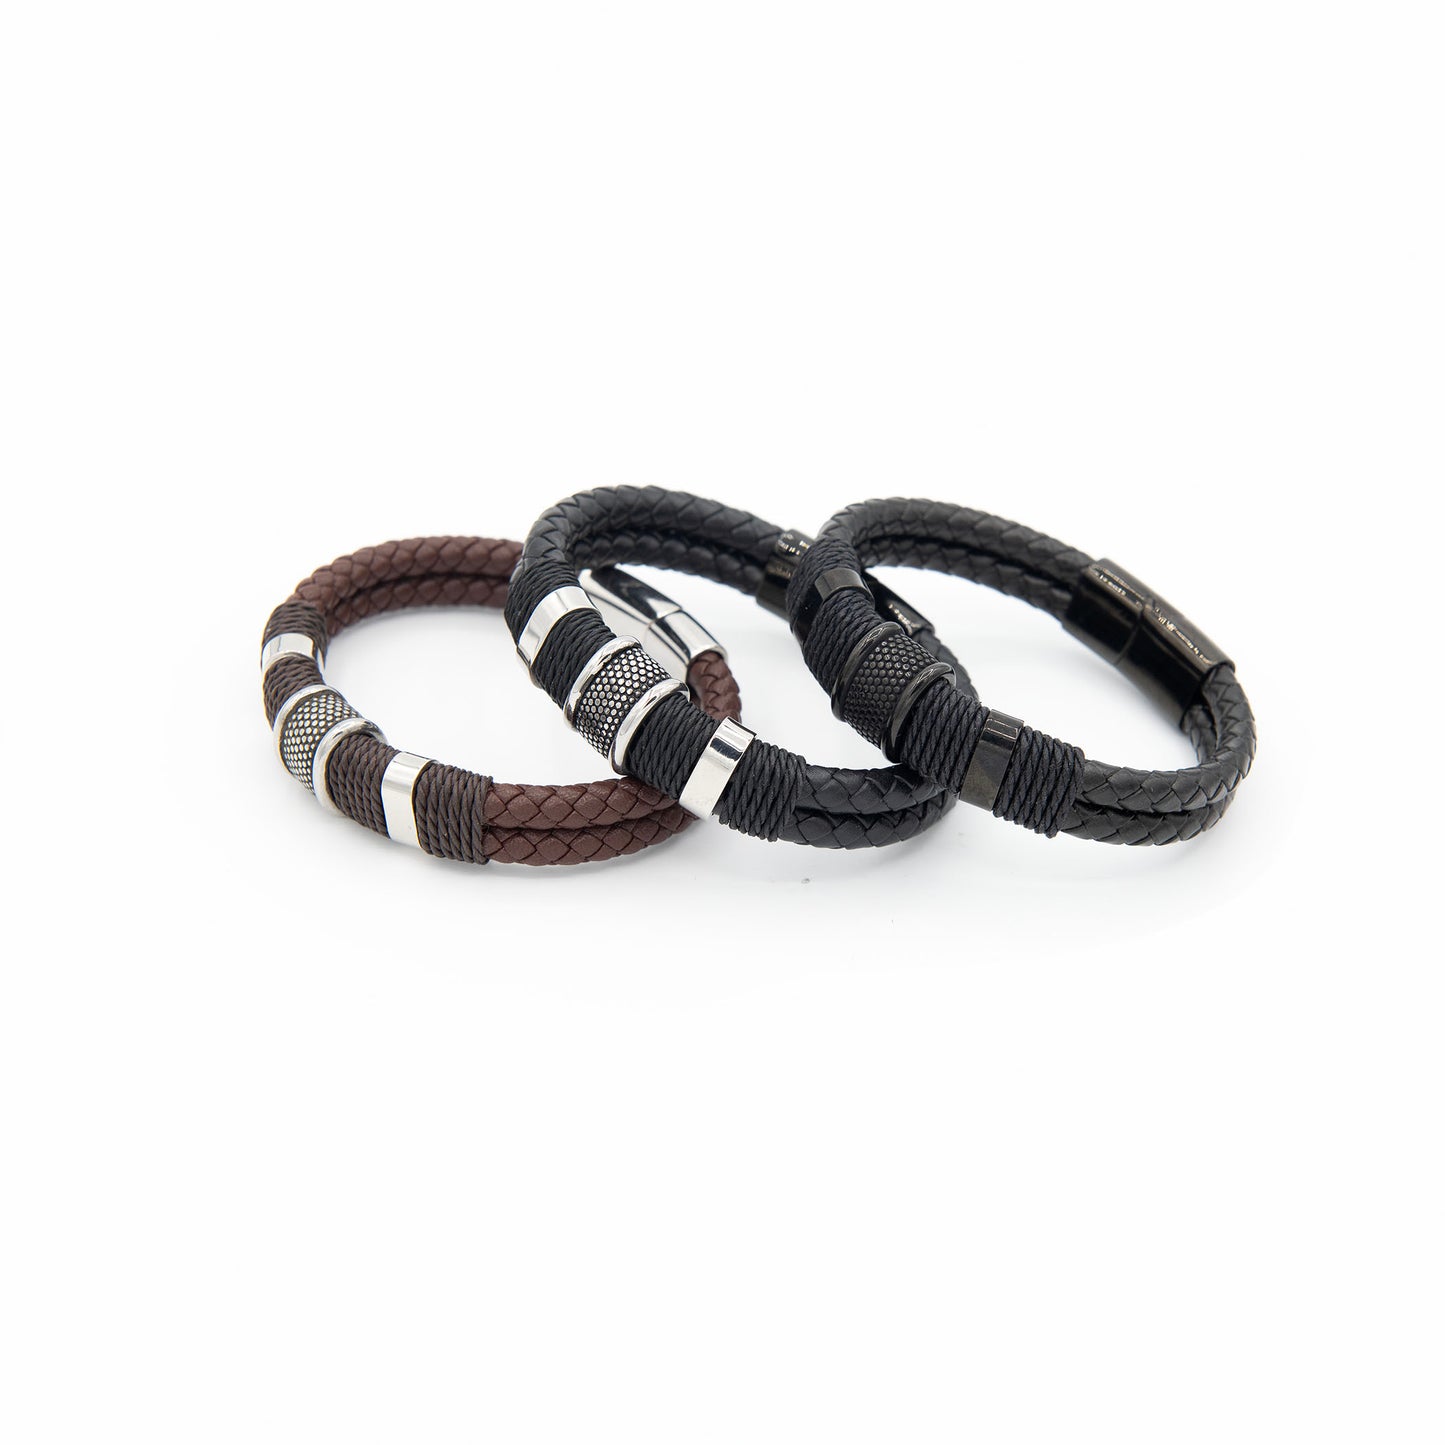 Banded Bracelet Collection